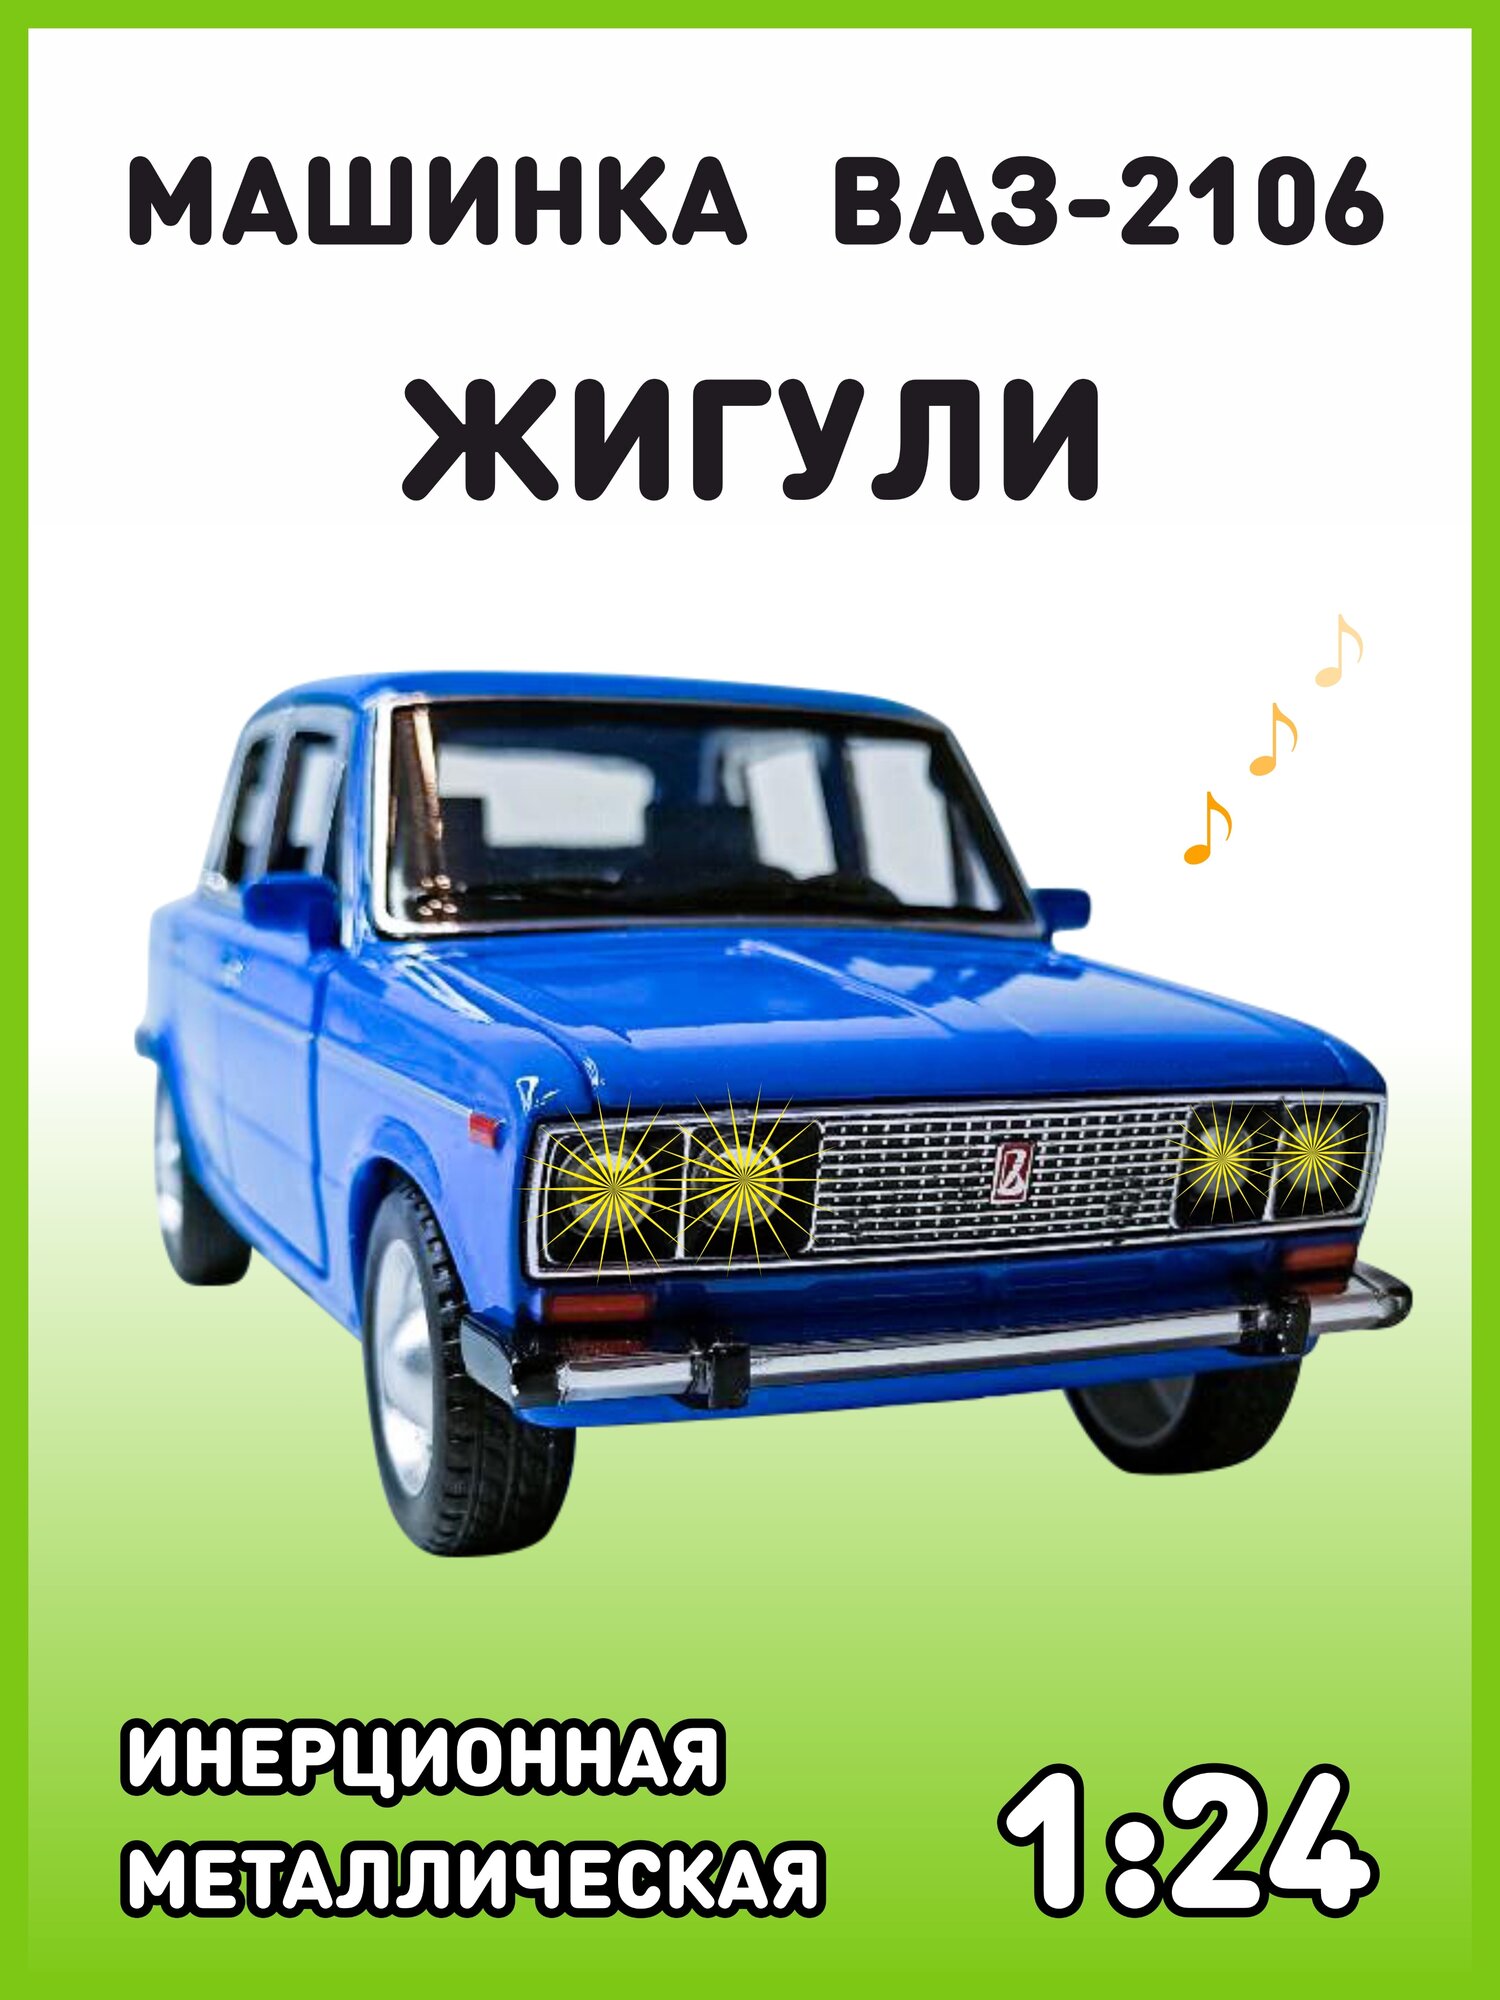 Модель автомобиля Жигули ВАЗ 2106 коллекционная металлическая игрушка масштаб 1:24 светло-синий